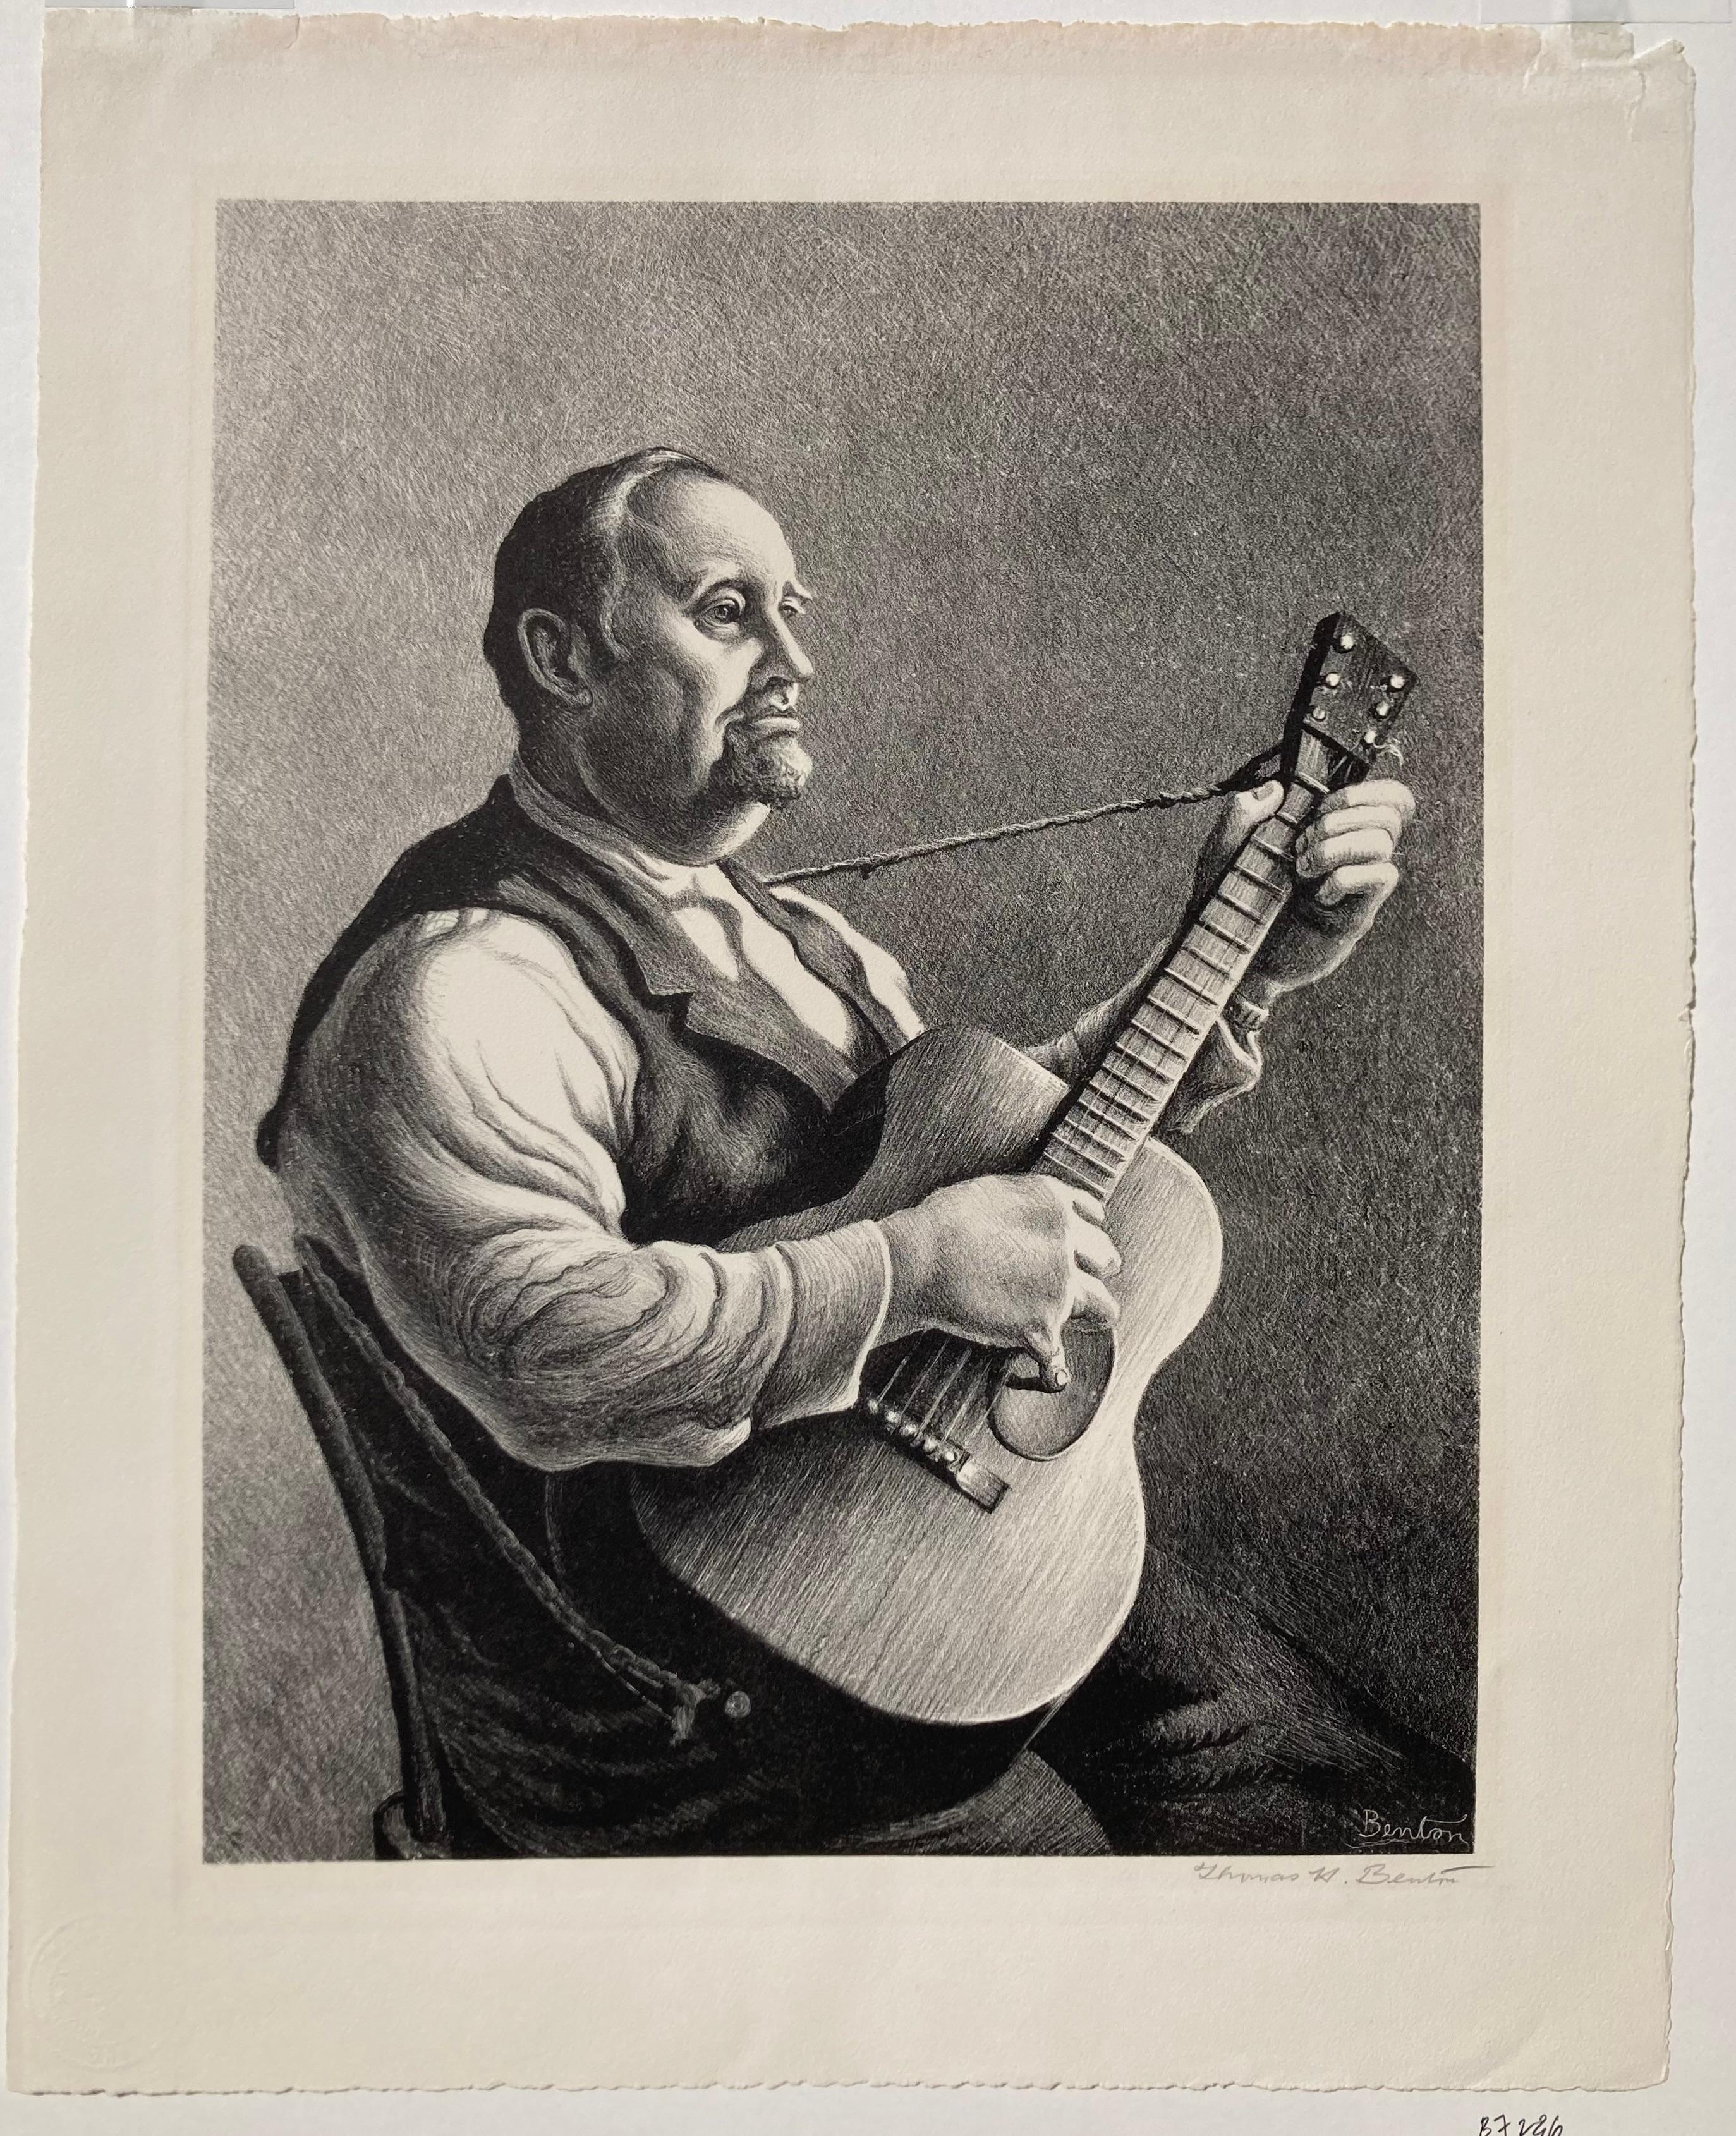 HYMN SINGER / THE MINSTREL / BURL IVES  --  Large Benton - Print by Thomas Hart Benton